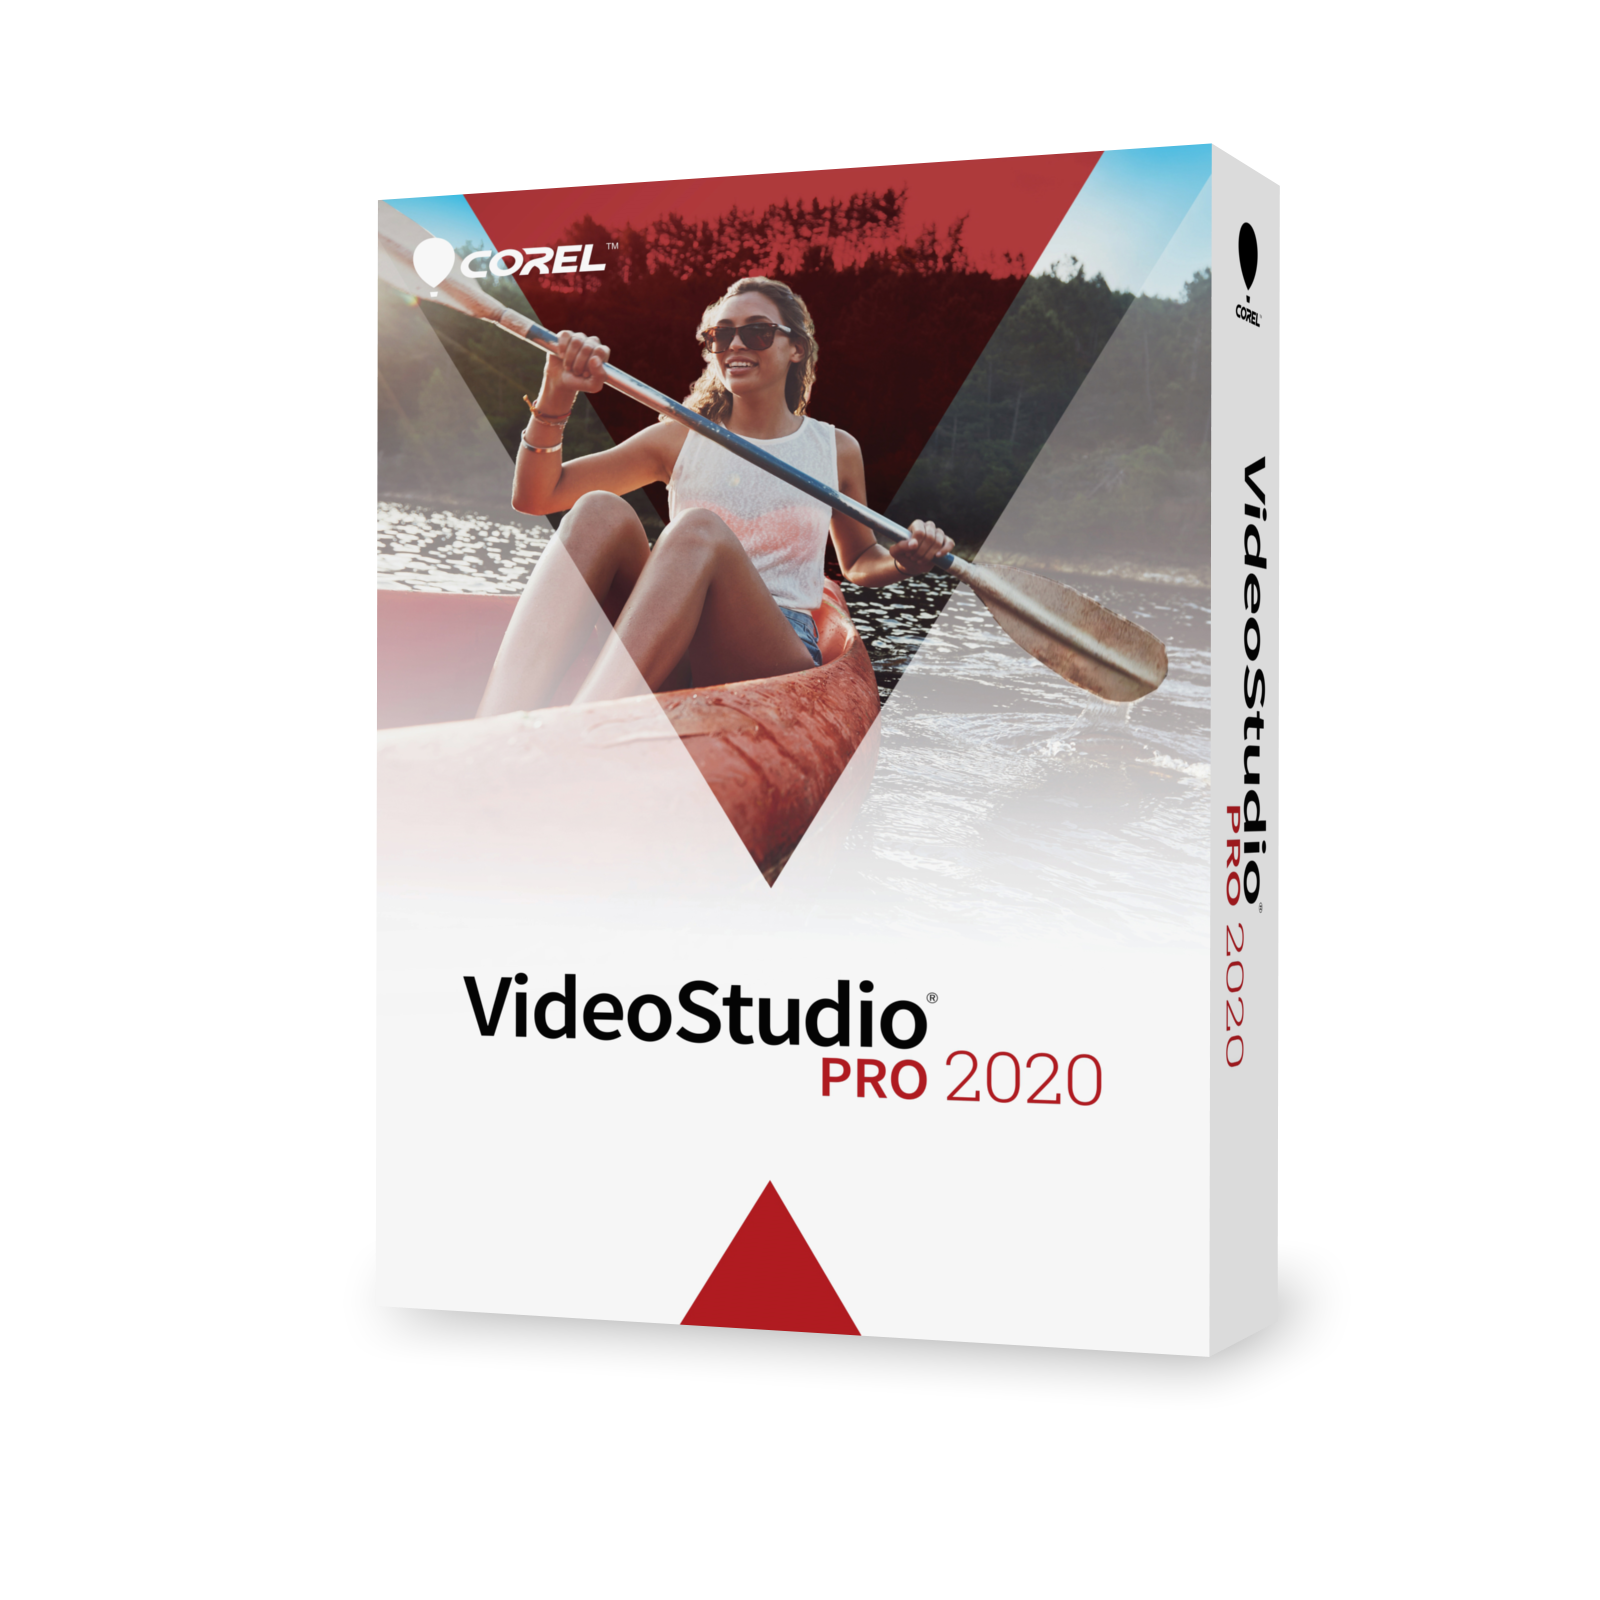 corel-videostudio-pro-2020-eng-win-box-corel-video-studio-www